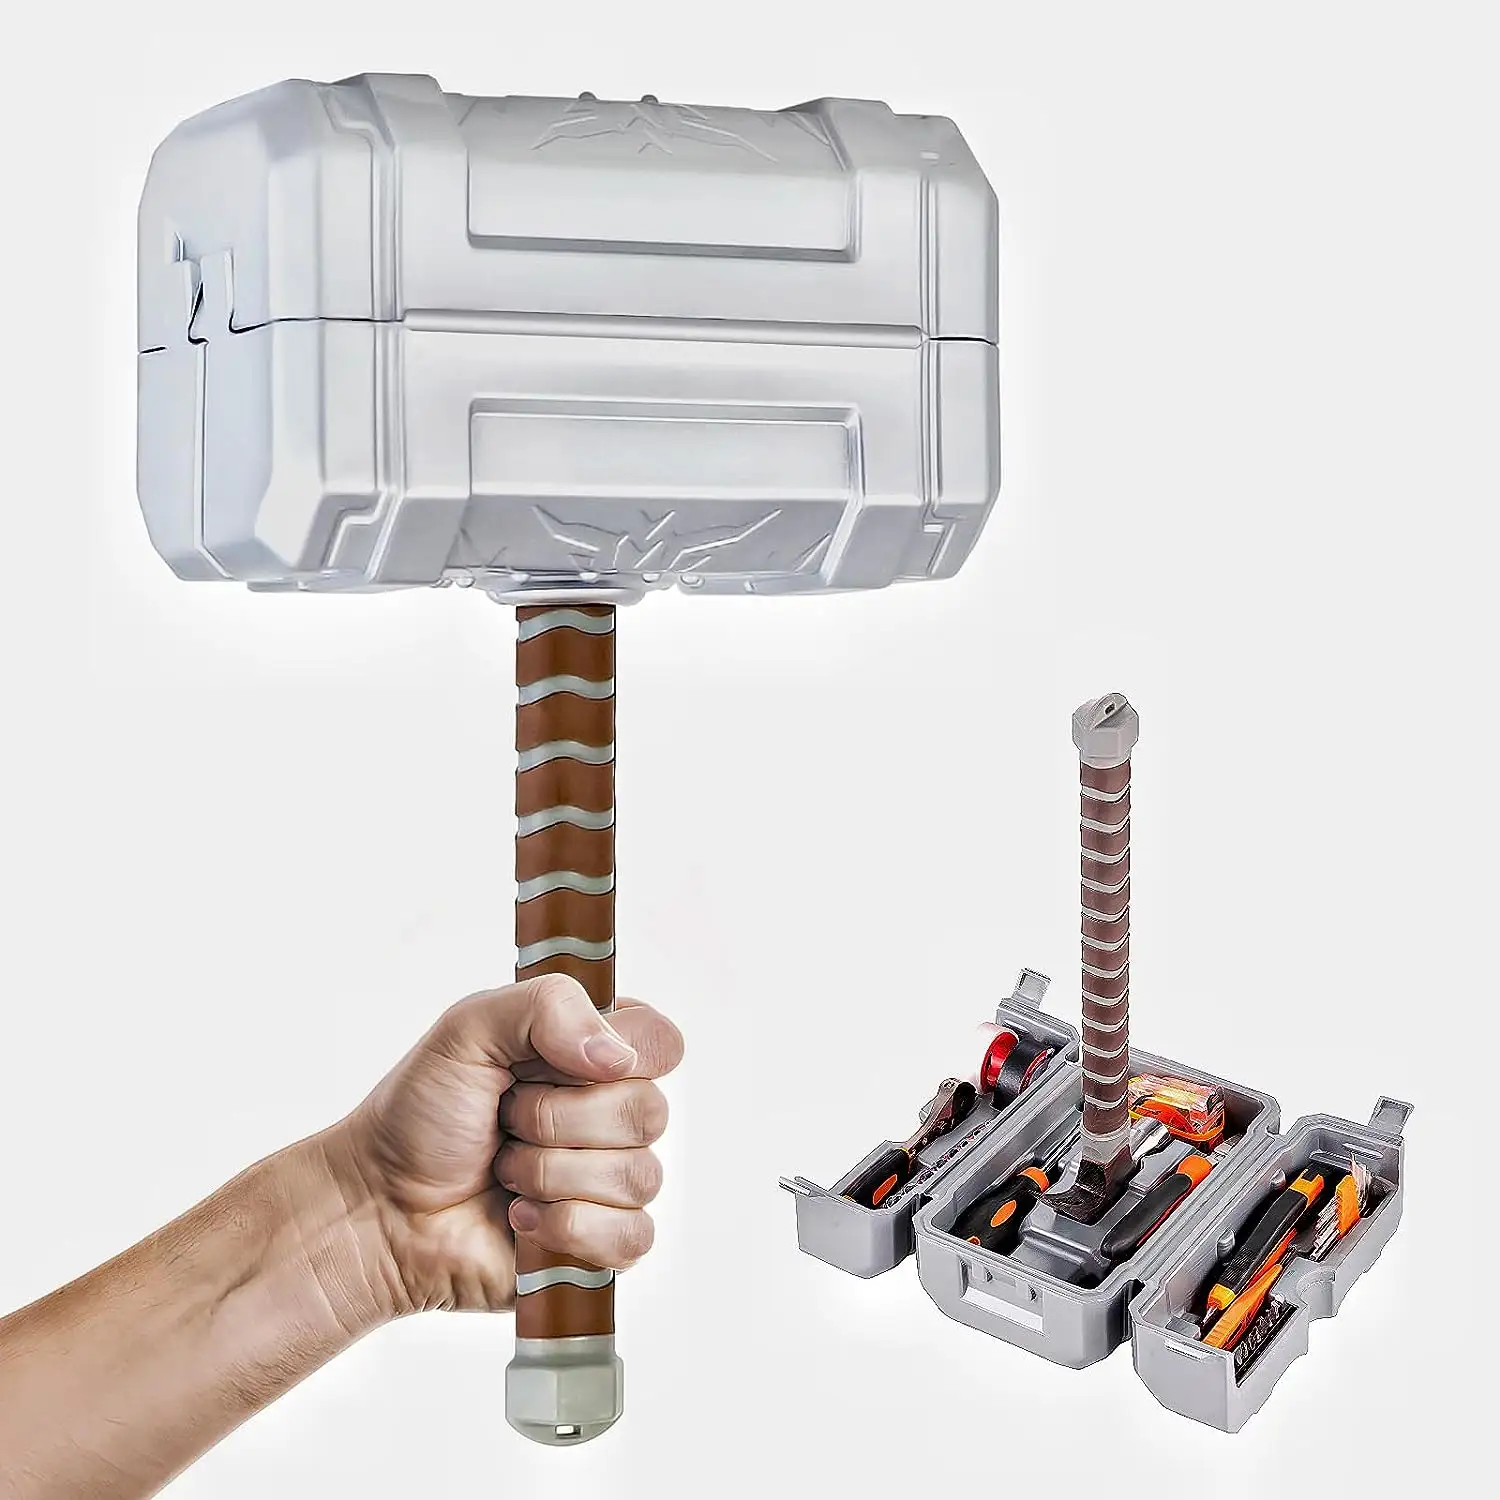 Thor búa hộp công cụ di động nhà công cụ Kit nhựa hộp công cụ lưu trữ Trường hợp với 13-Piece chung sửa chữa công cụ Kit